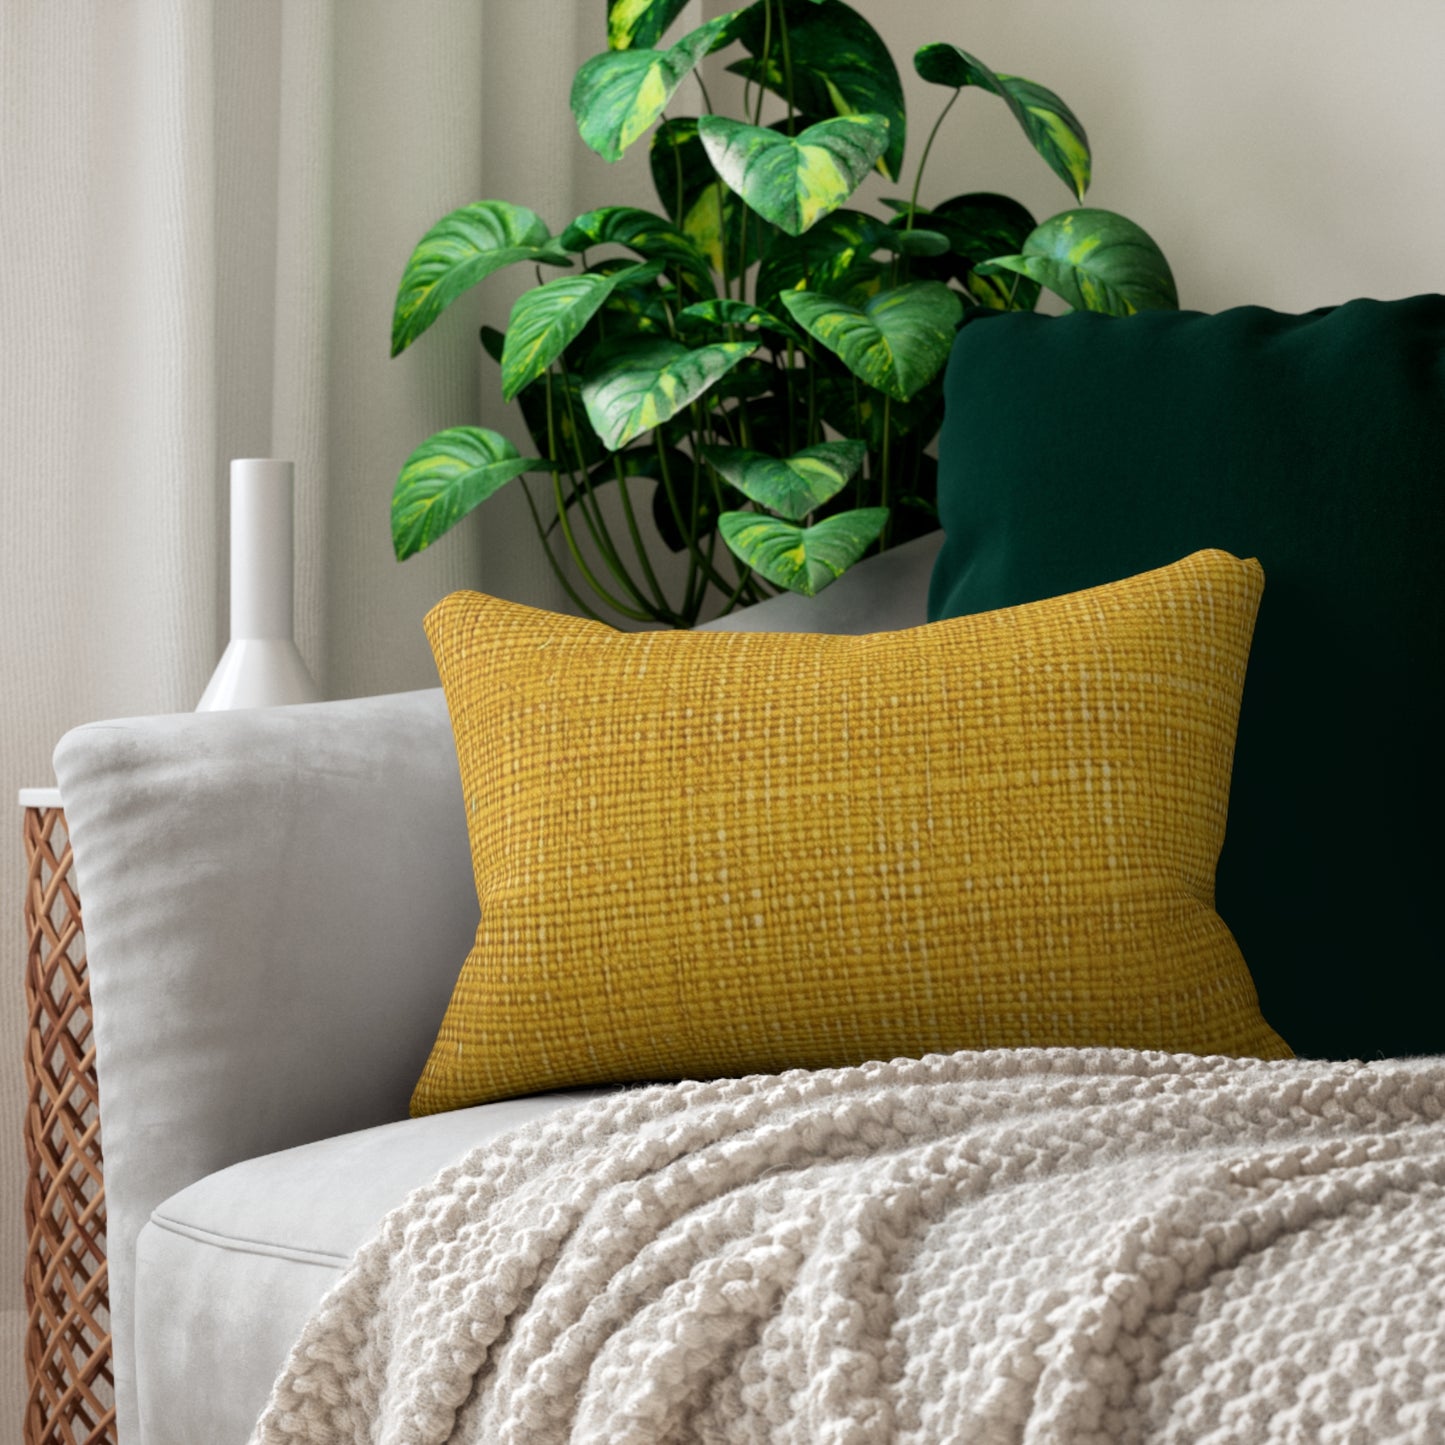 Radiant Sunny Yellow: Denim-Inspired Summer Fabric - Spun Polyester Lumbar Pillow